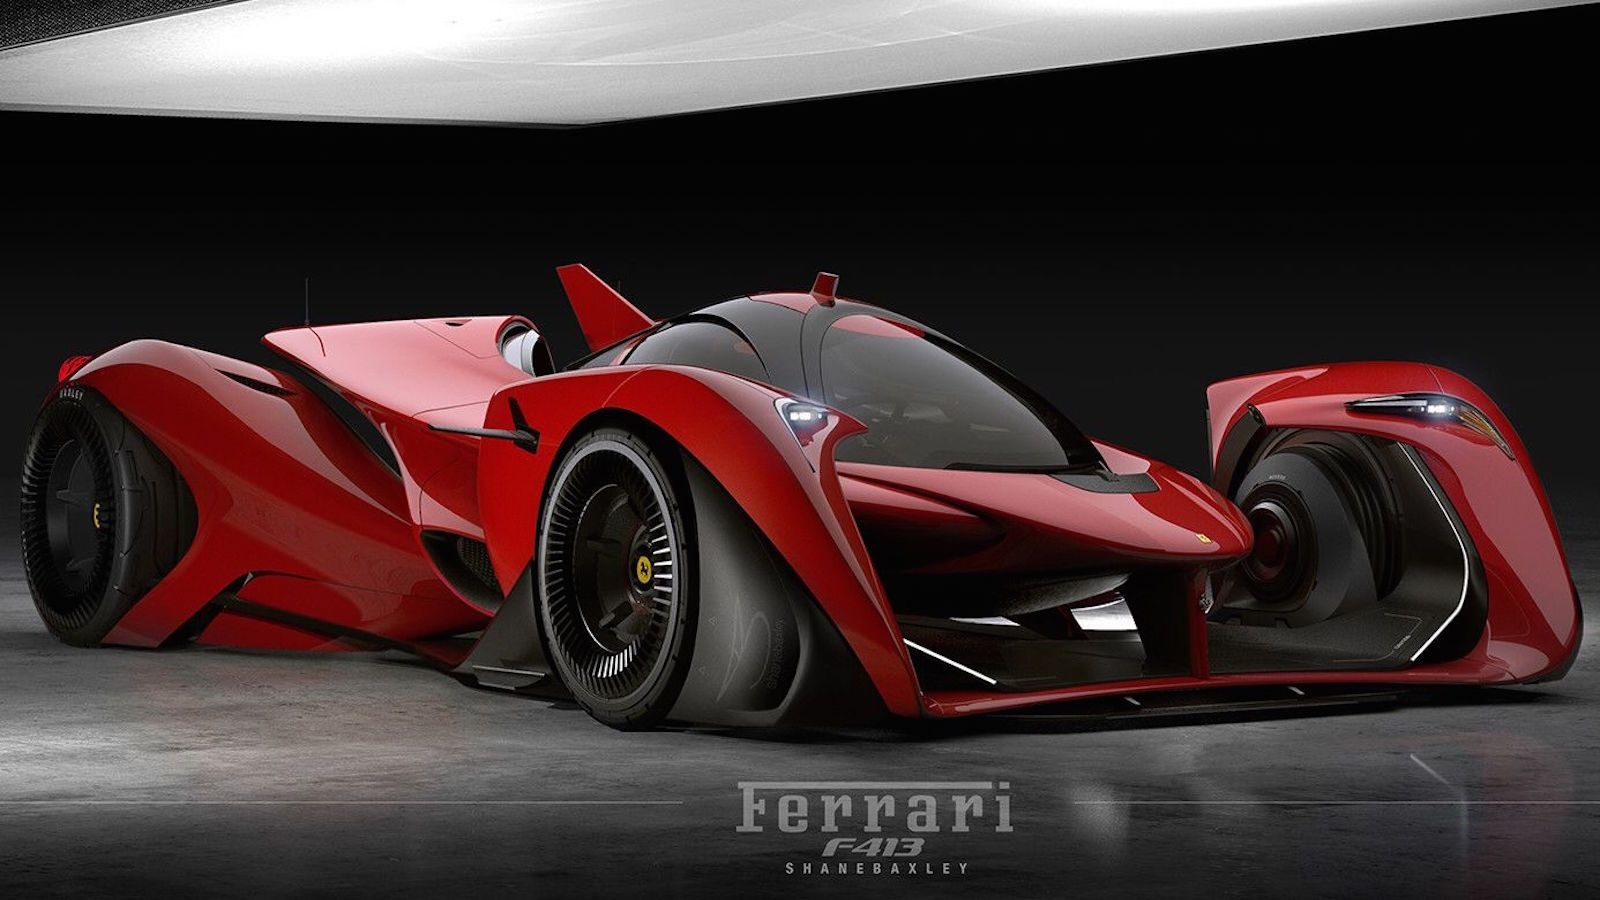 A futuristic Ferrari.